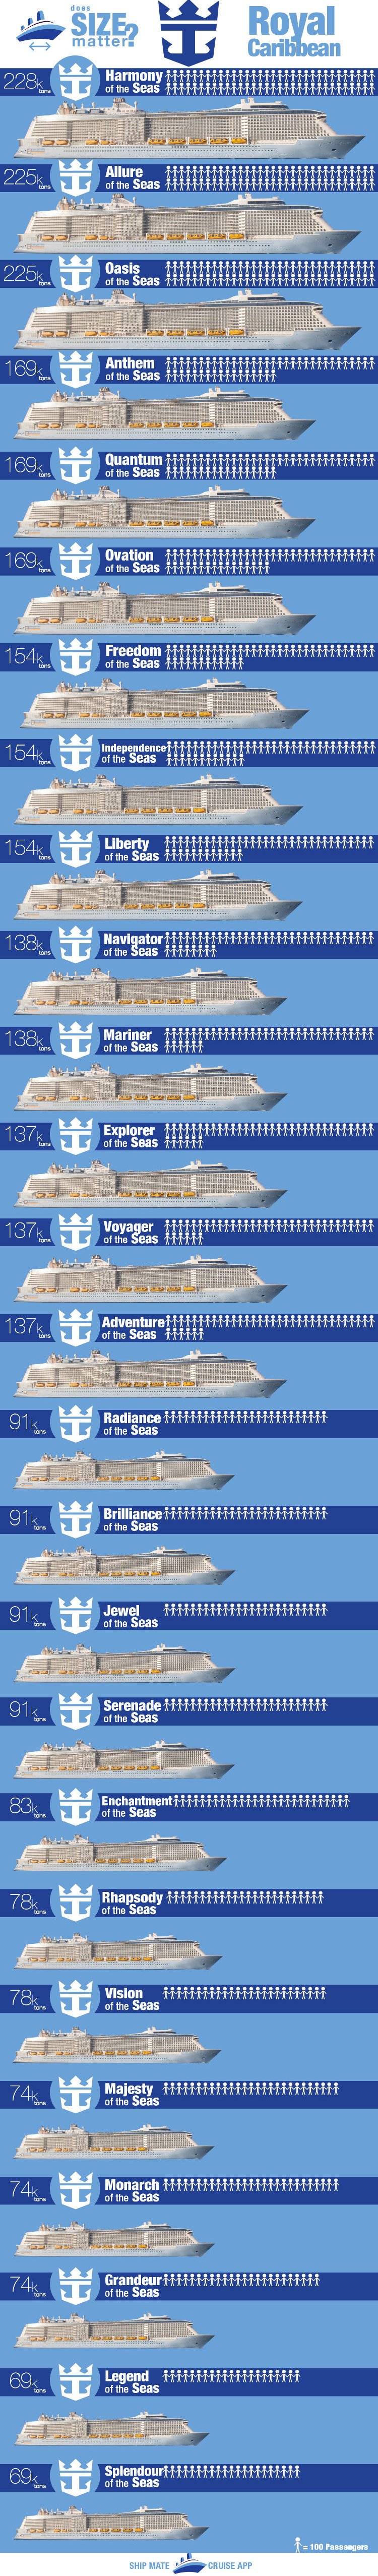 freedom ship comparison